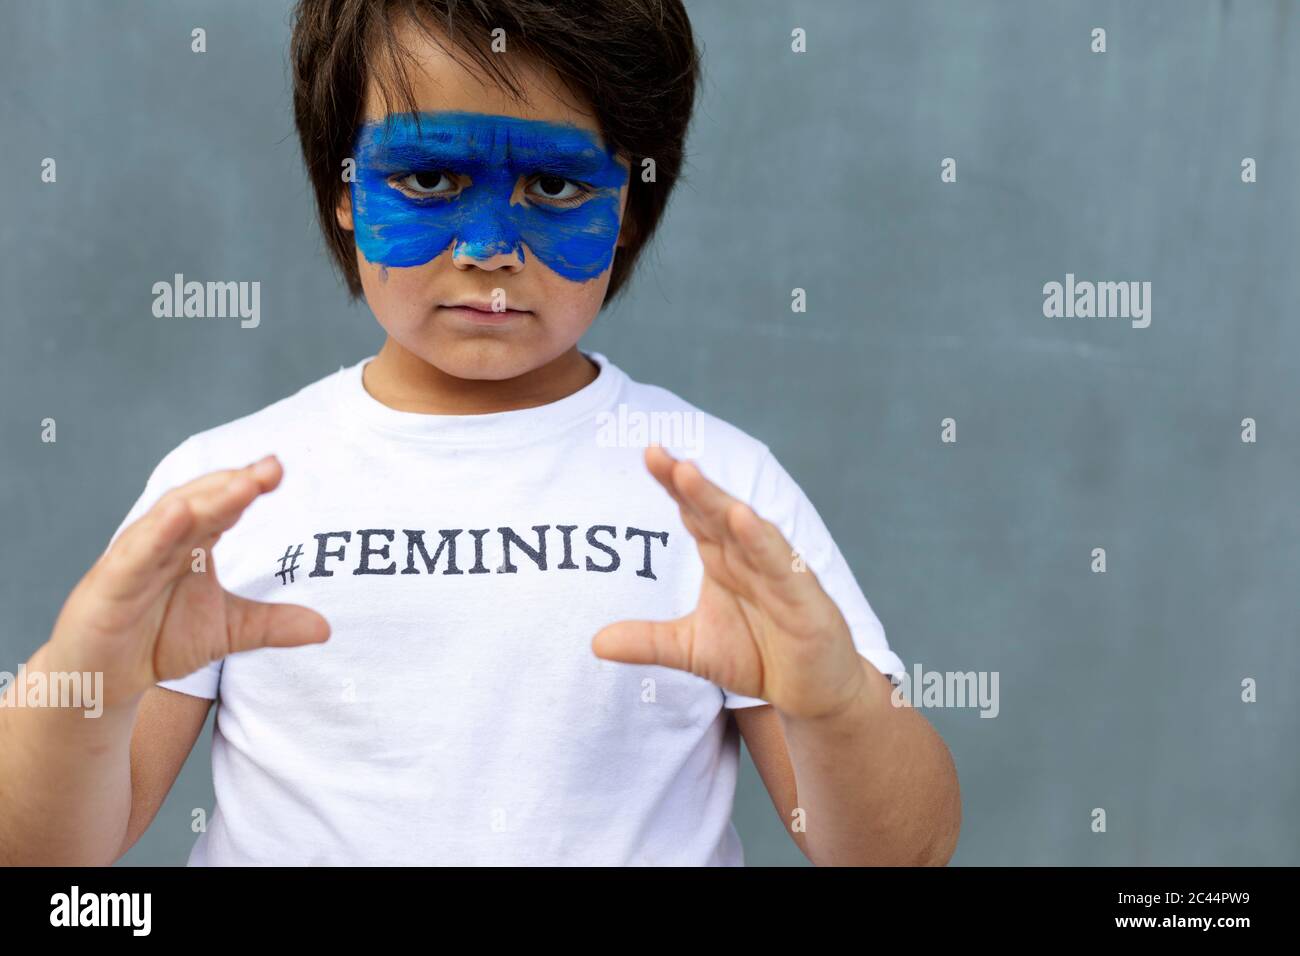 Portrait d'un garçon sérieux avec masque bleu peint sur son visage portant un t-shirt avec empreinte 'féministe' Banque D'Images